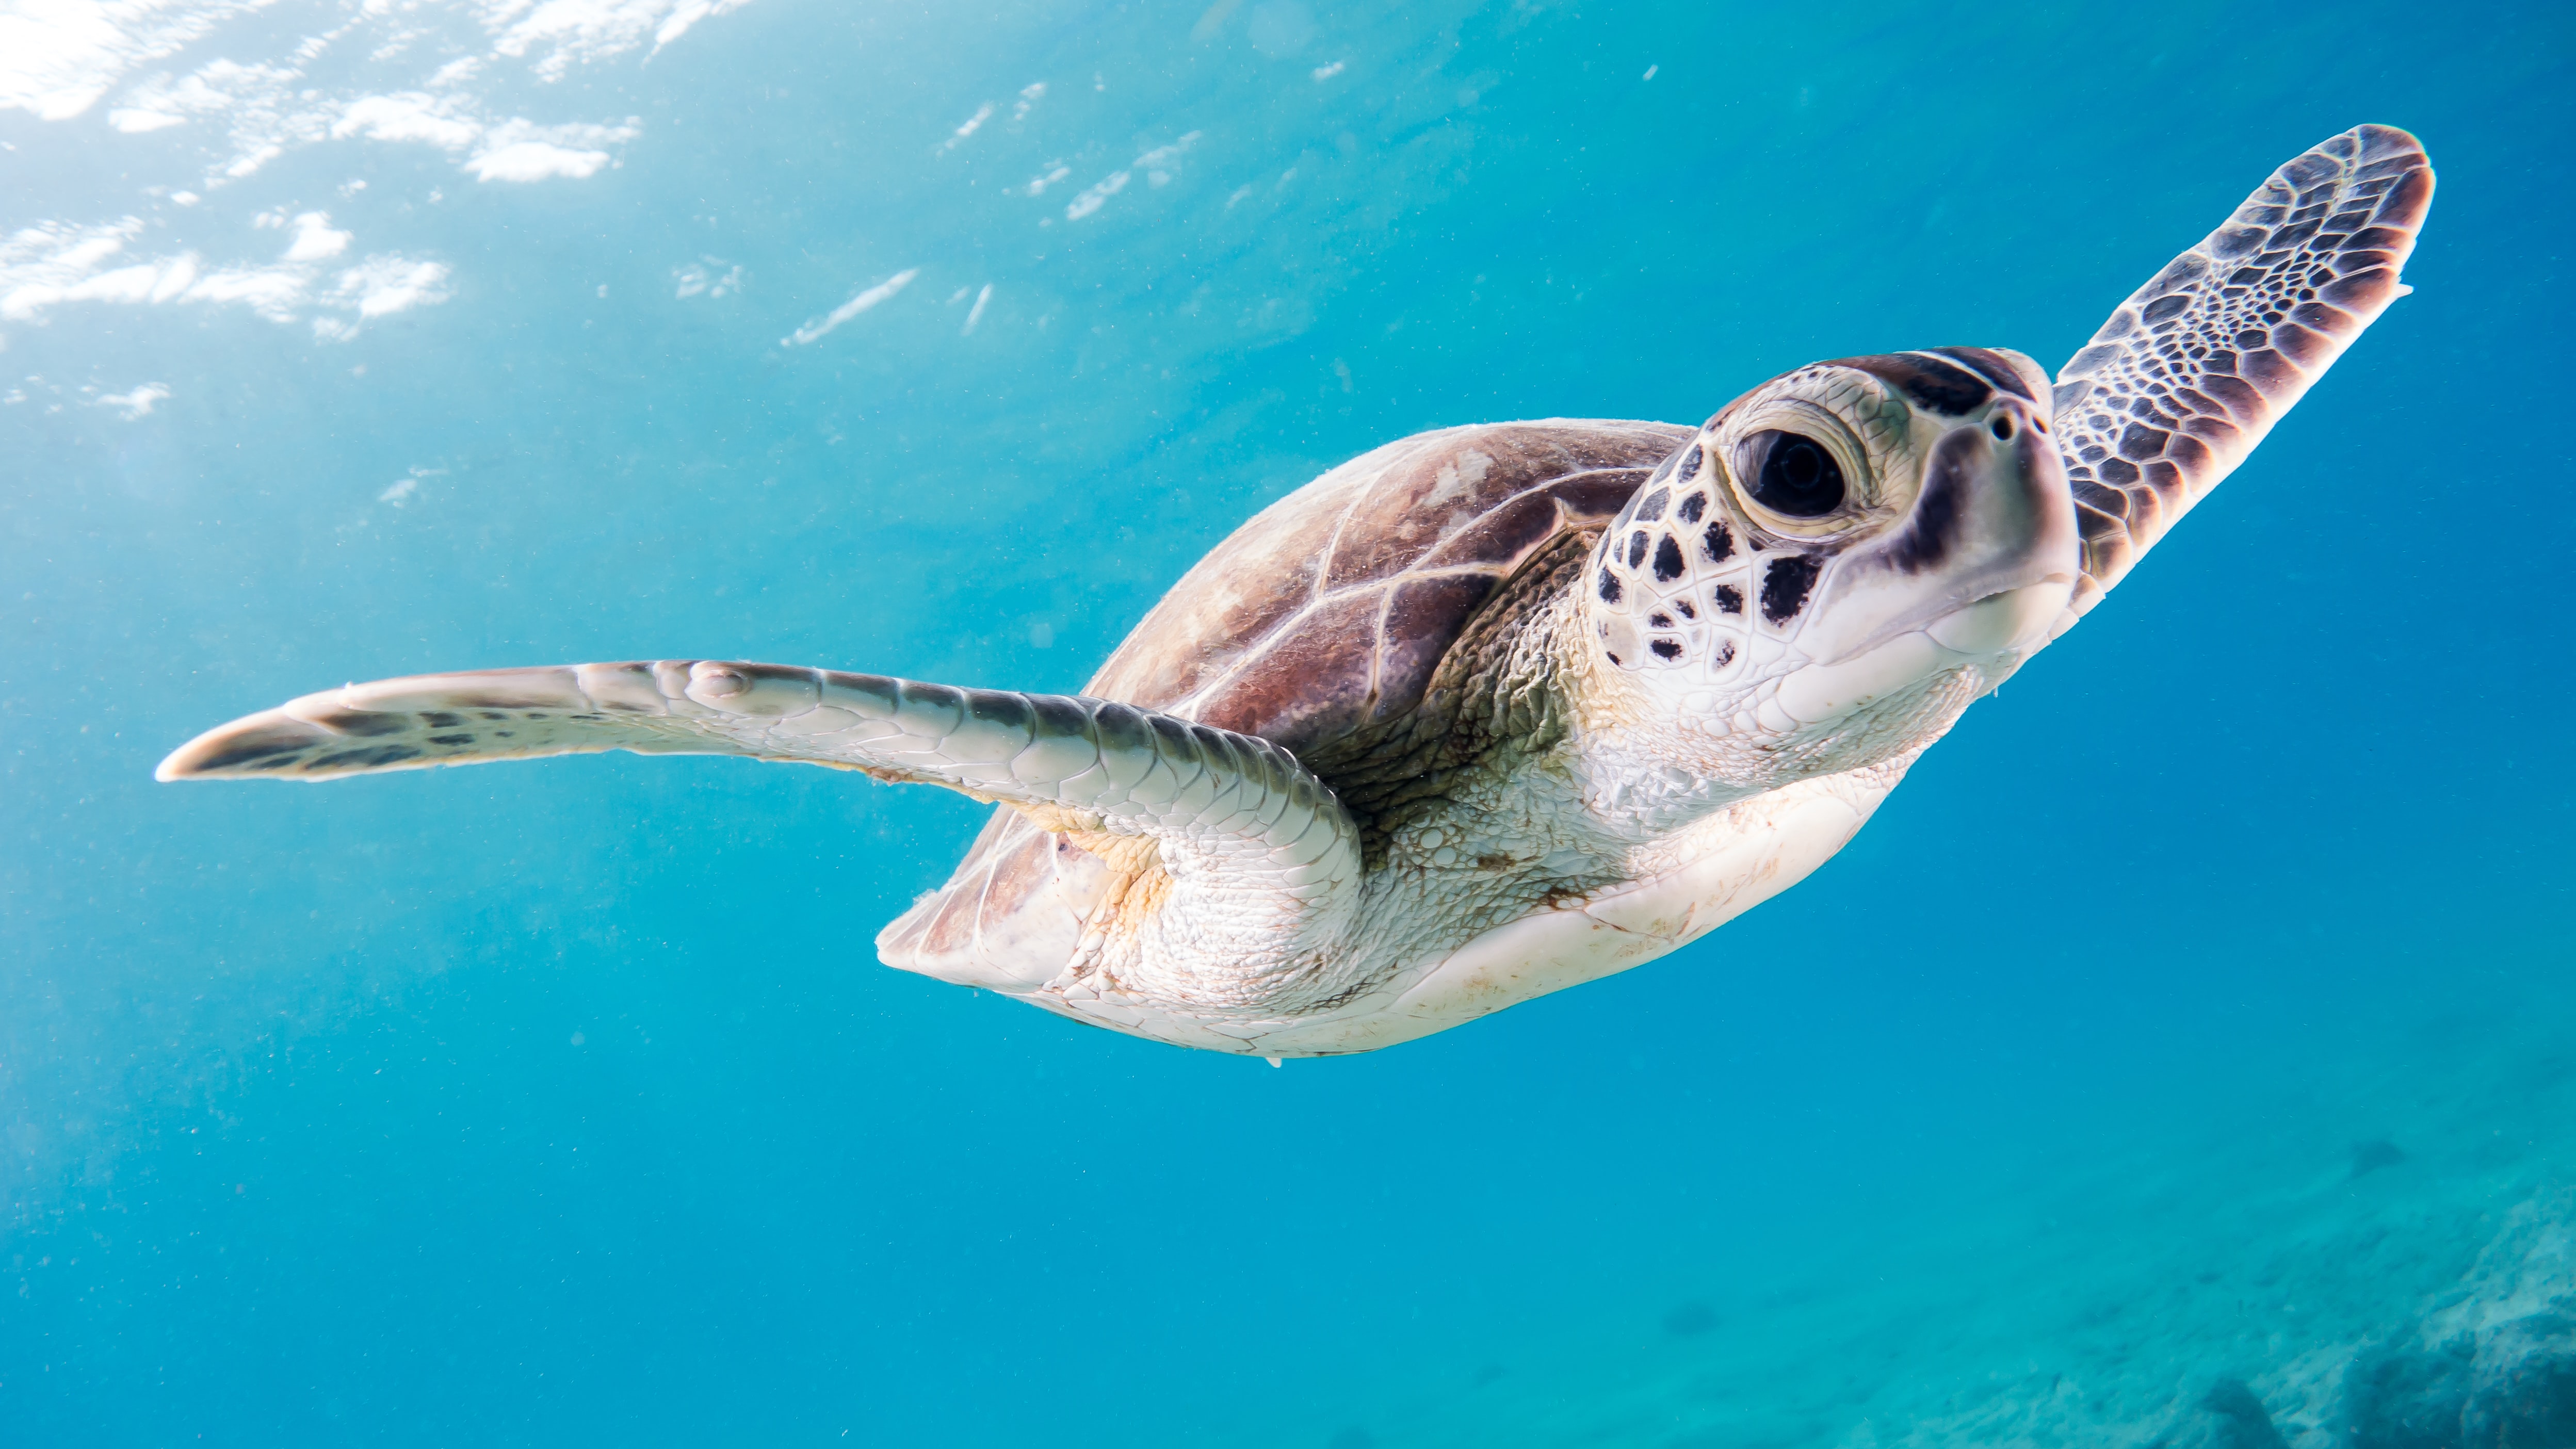 Eine Meeresschildkröte schwimmt im hellblauen Wasser und blickt mit einem großen Auge direkt in die Kamera.